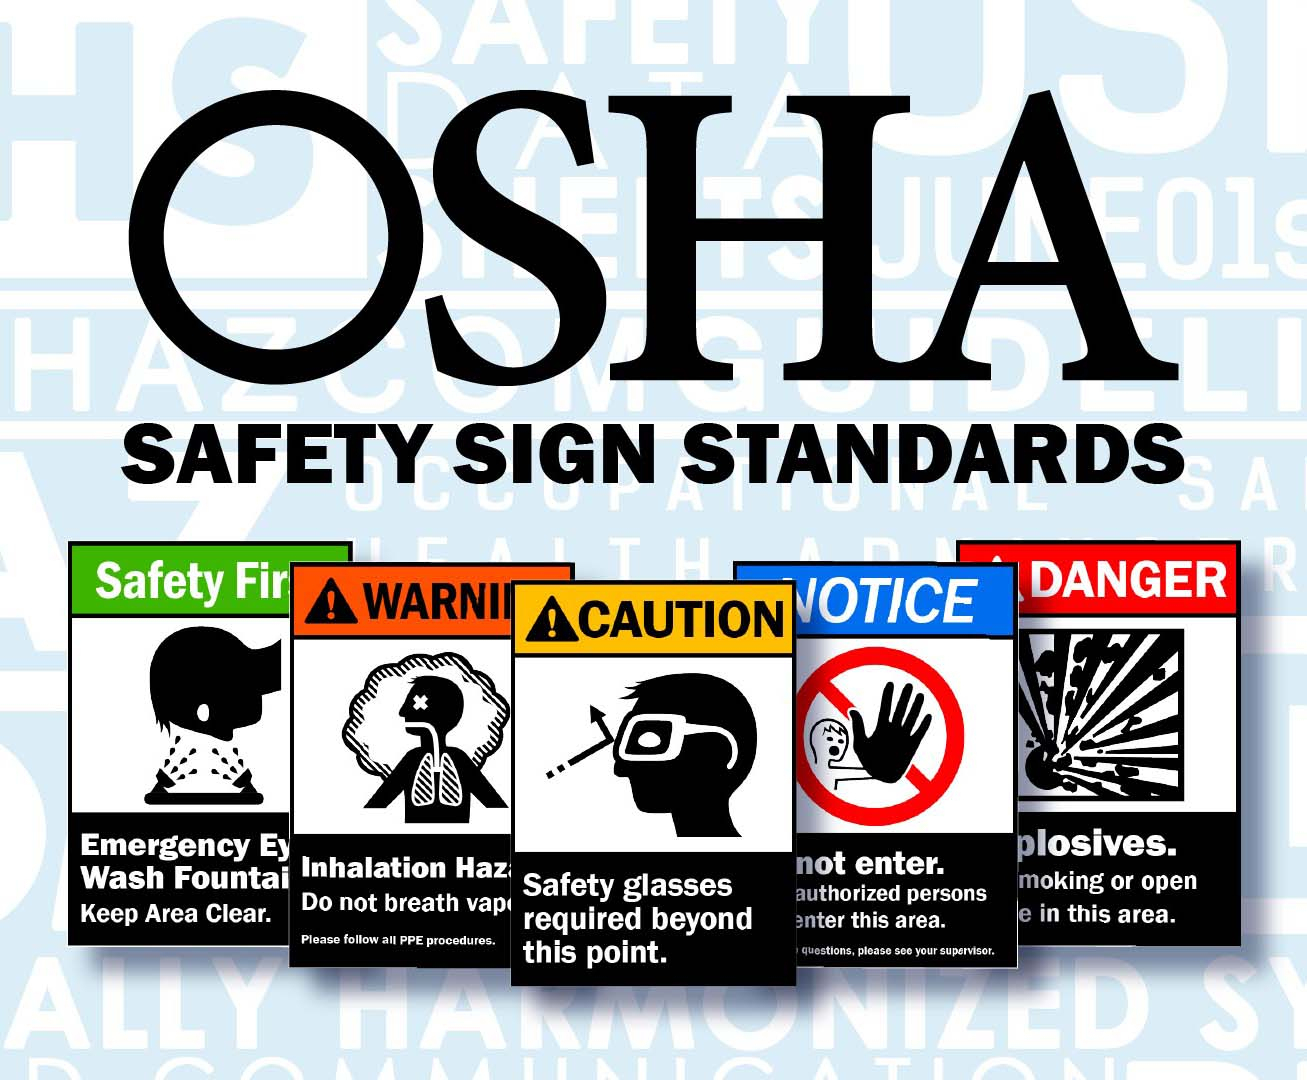 Safety Signs Coupon Code : Loreal Printable Coupons 2018 - Osha Signs Free Printable